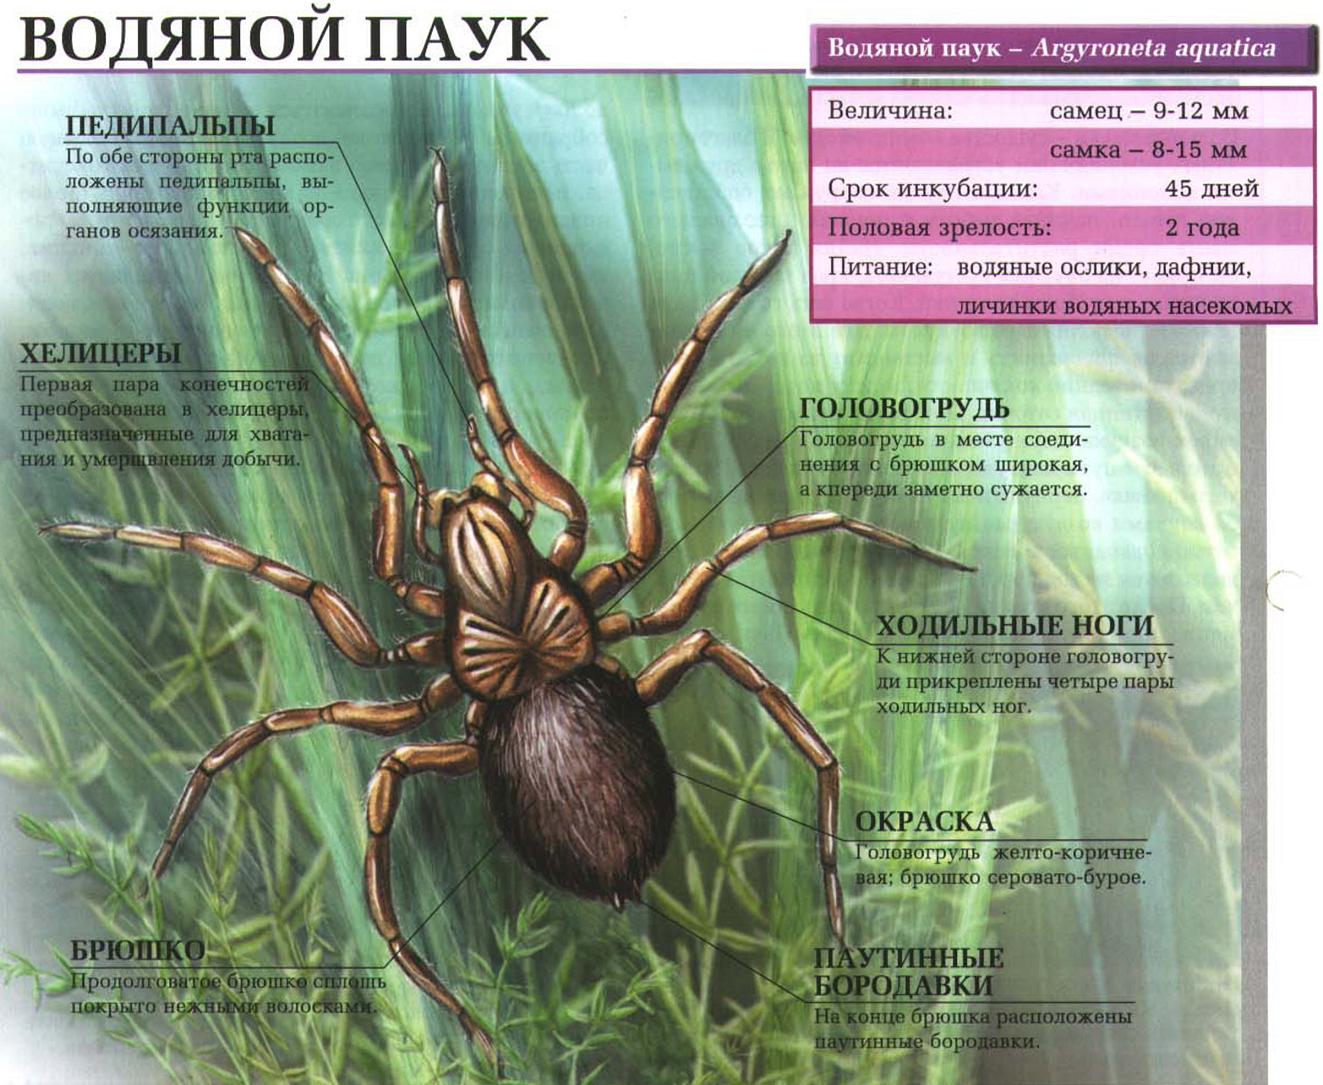 Водяной паук (Argyroneta aquatica) - образ жизни, питание, размножение.